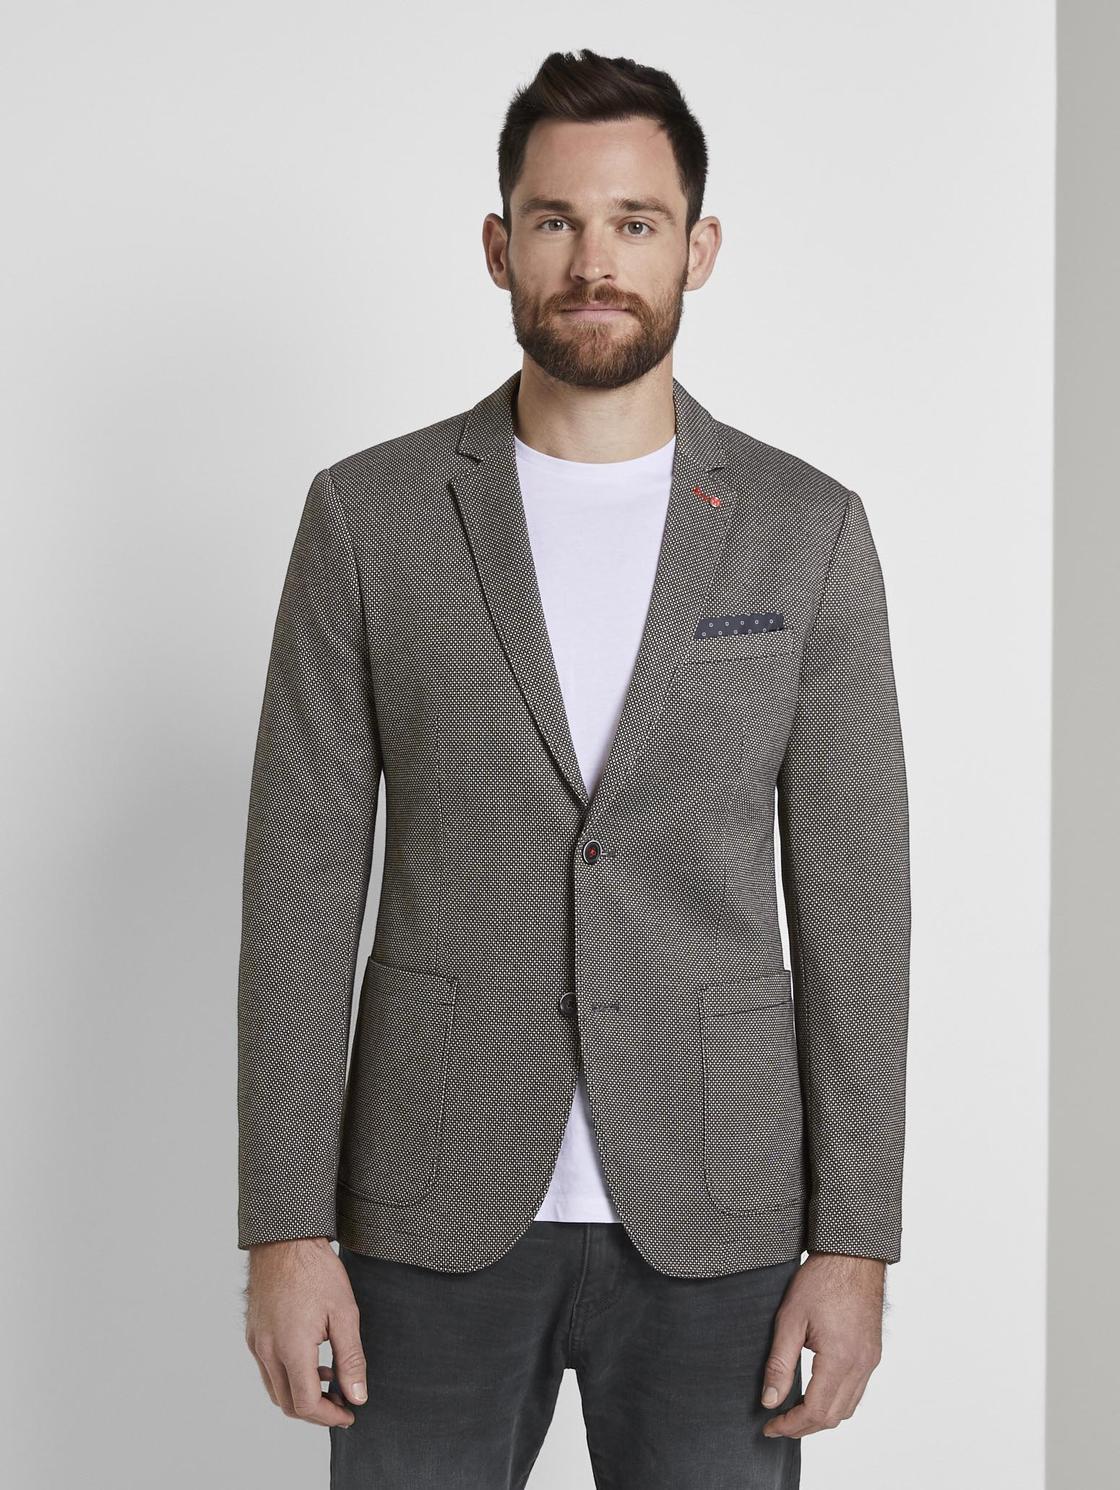 Классический мужской пиджак: Пиджак мужской классический – купить в интернет-магазине Men’s Club